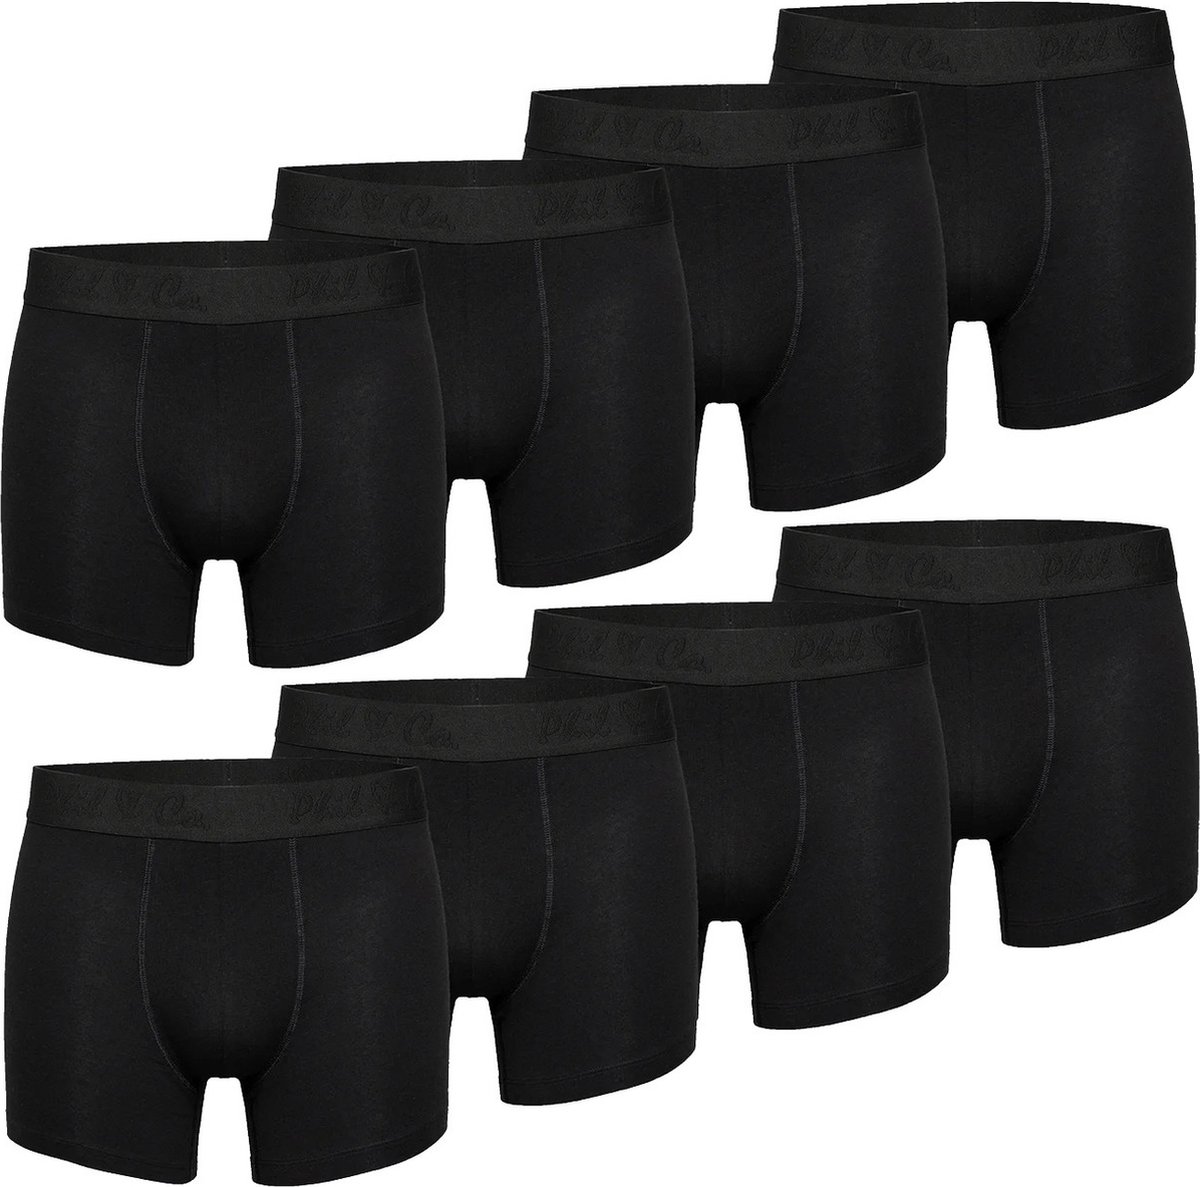 Phil & Co Zwarte Boxershorts Heren Multipack 8-Pack Zwart - Maat L | Onderbroek